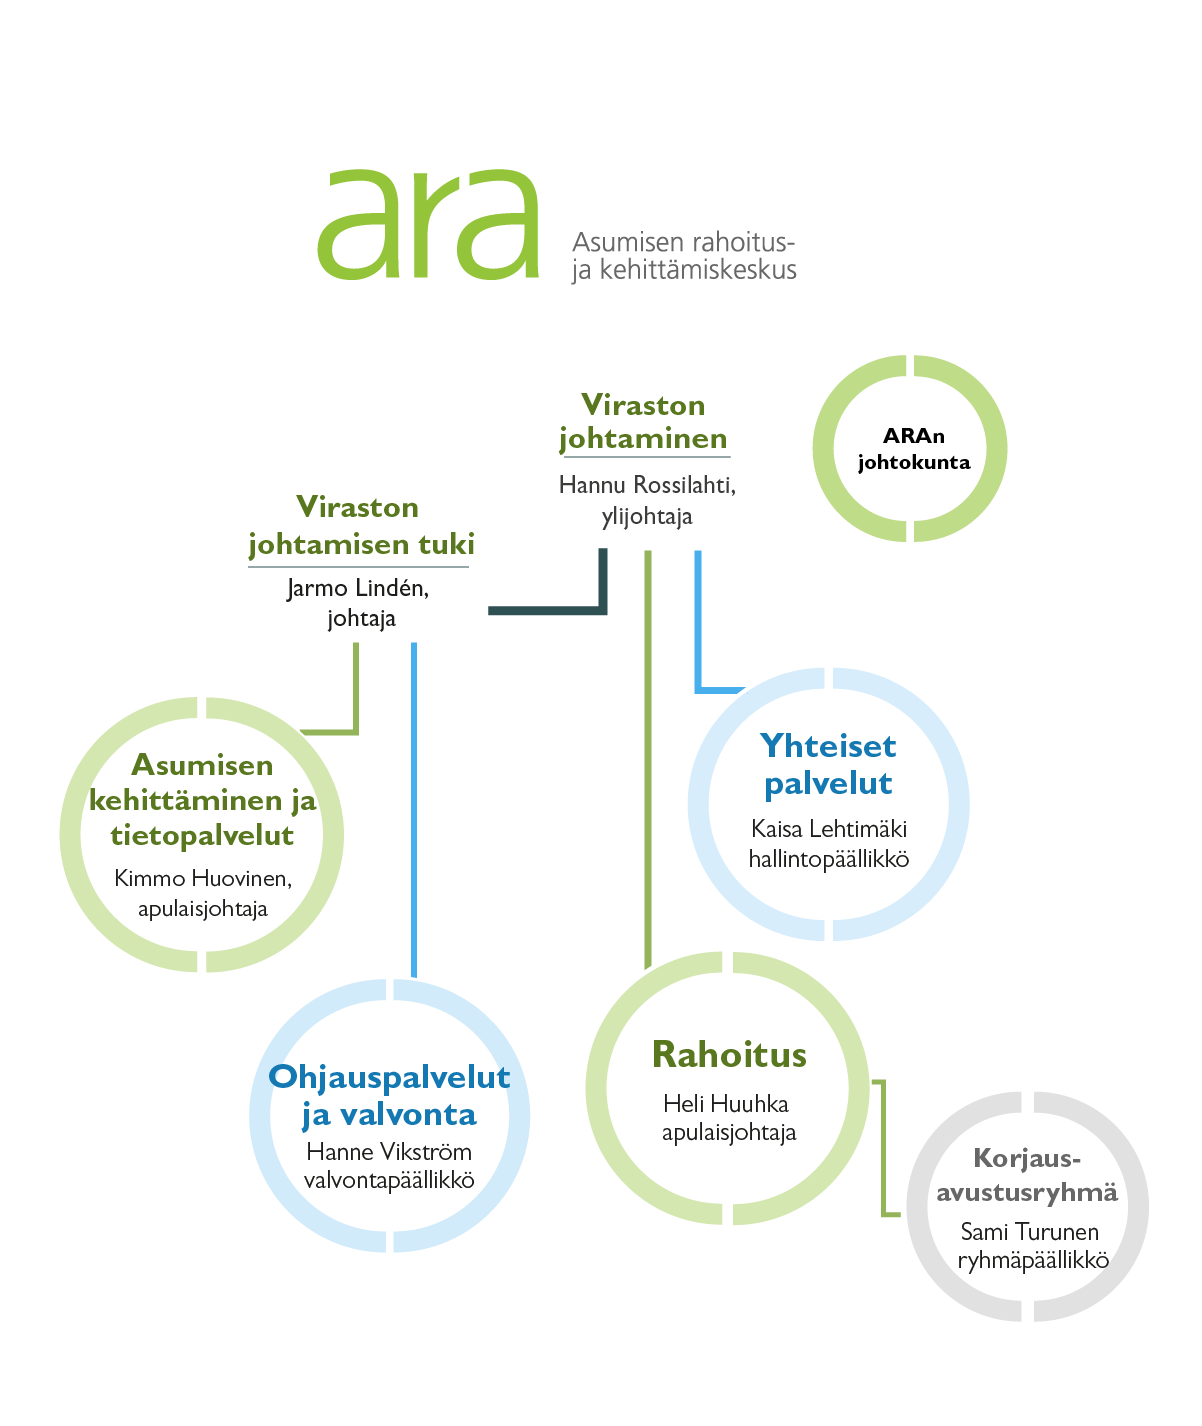 ARAn organisaatio koostuu rahoituksen, yhteisten palveluiden, ohjauksen ja valvonnnan sekä asumisen kehittämisen ja tietopalveluiden palvelualueista.